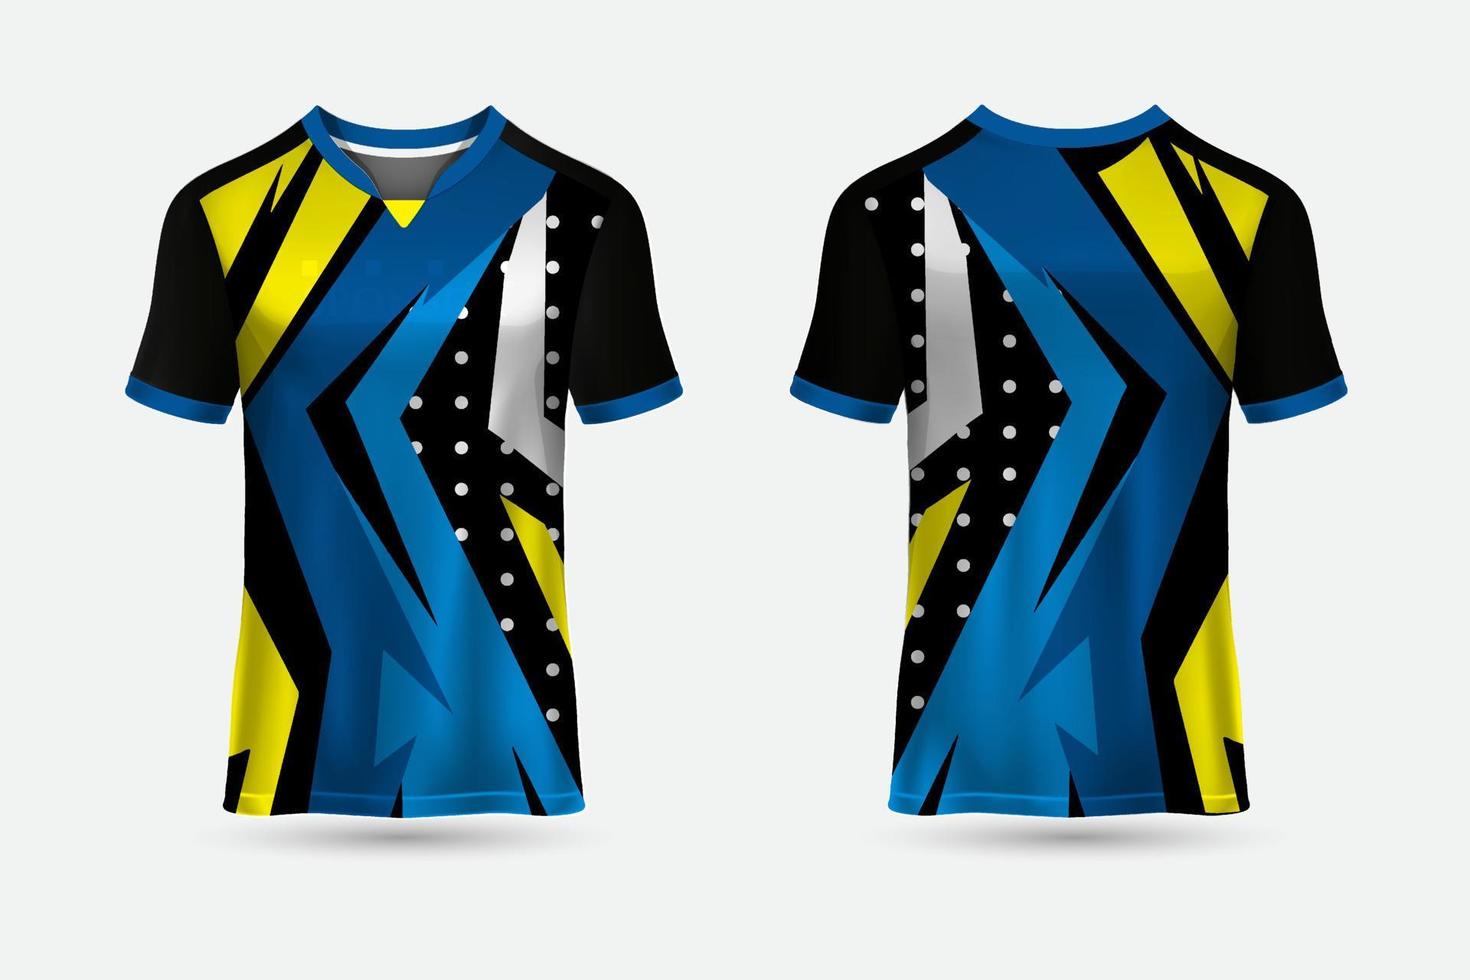 nieuw ontwerp van tshirt sport abstracte jersey geschikt voor racen, voetbal, gaming, motorcross, gaming, fietsen. vector